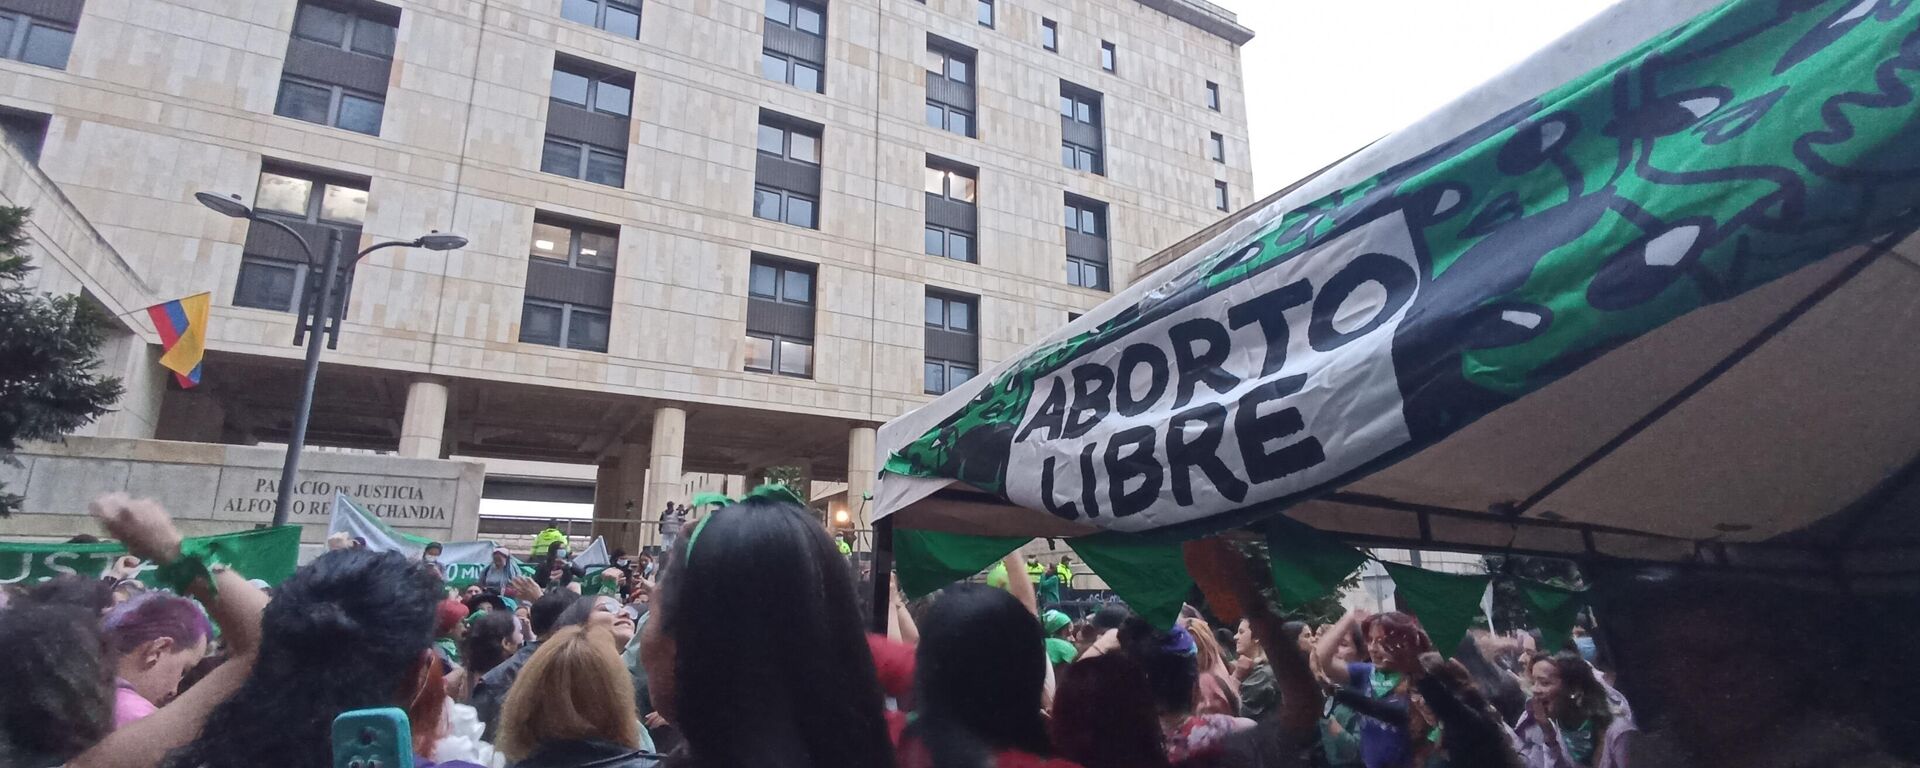 Colombianas celebran despenalización total del aborto hasta las 24 semanas de gestación - Sputnik Mundo, 1920, 28.06.2022